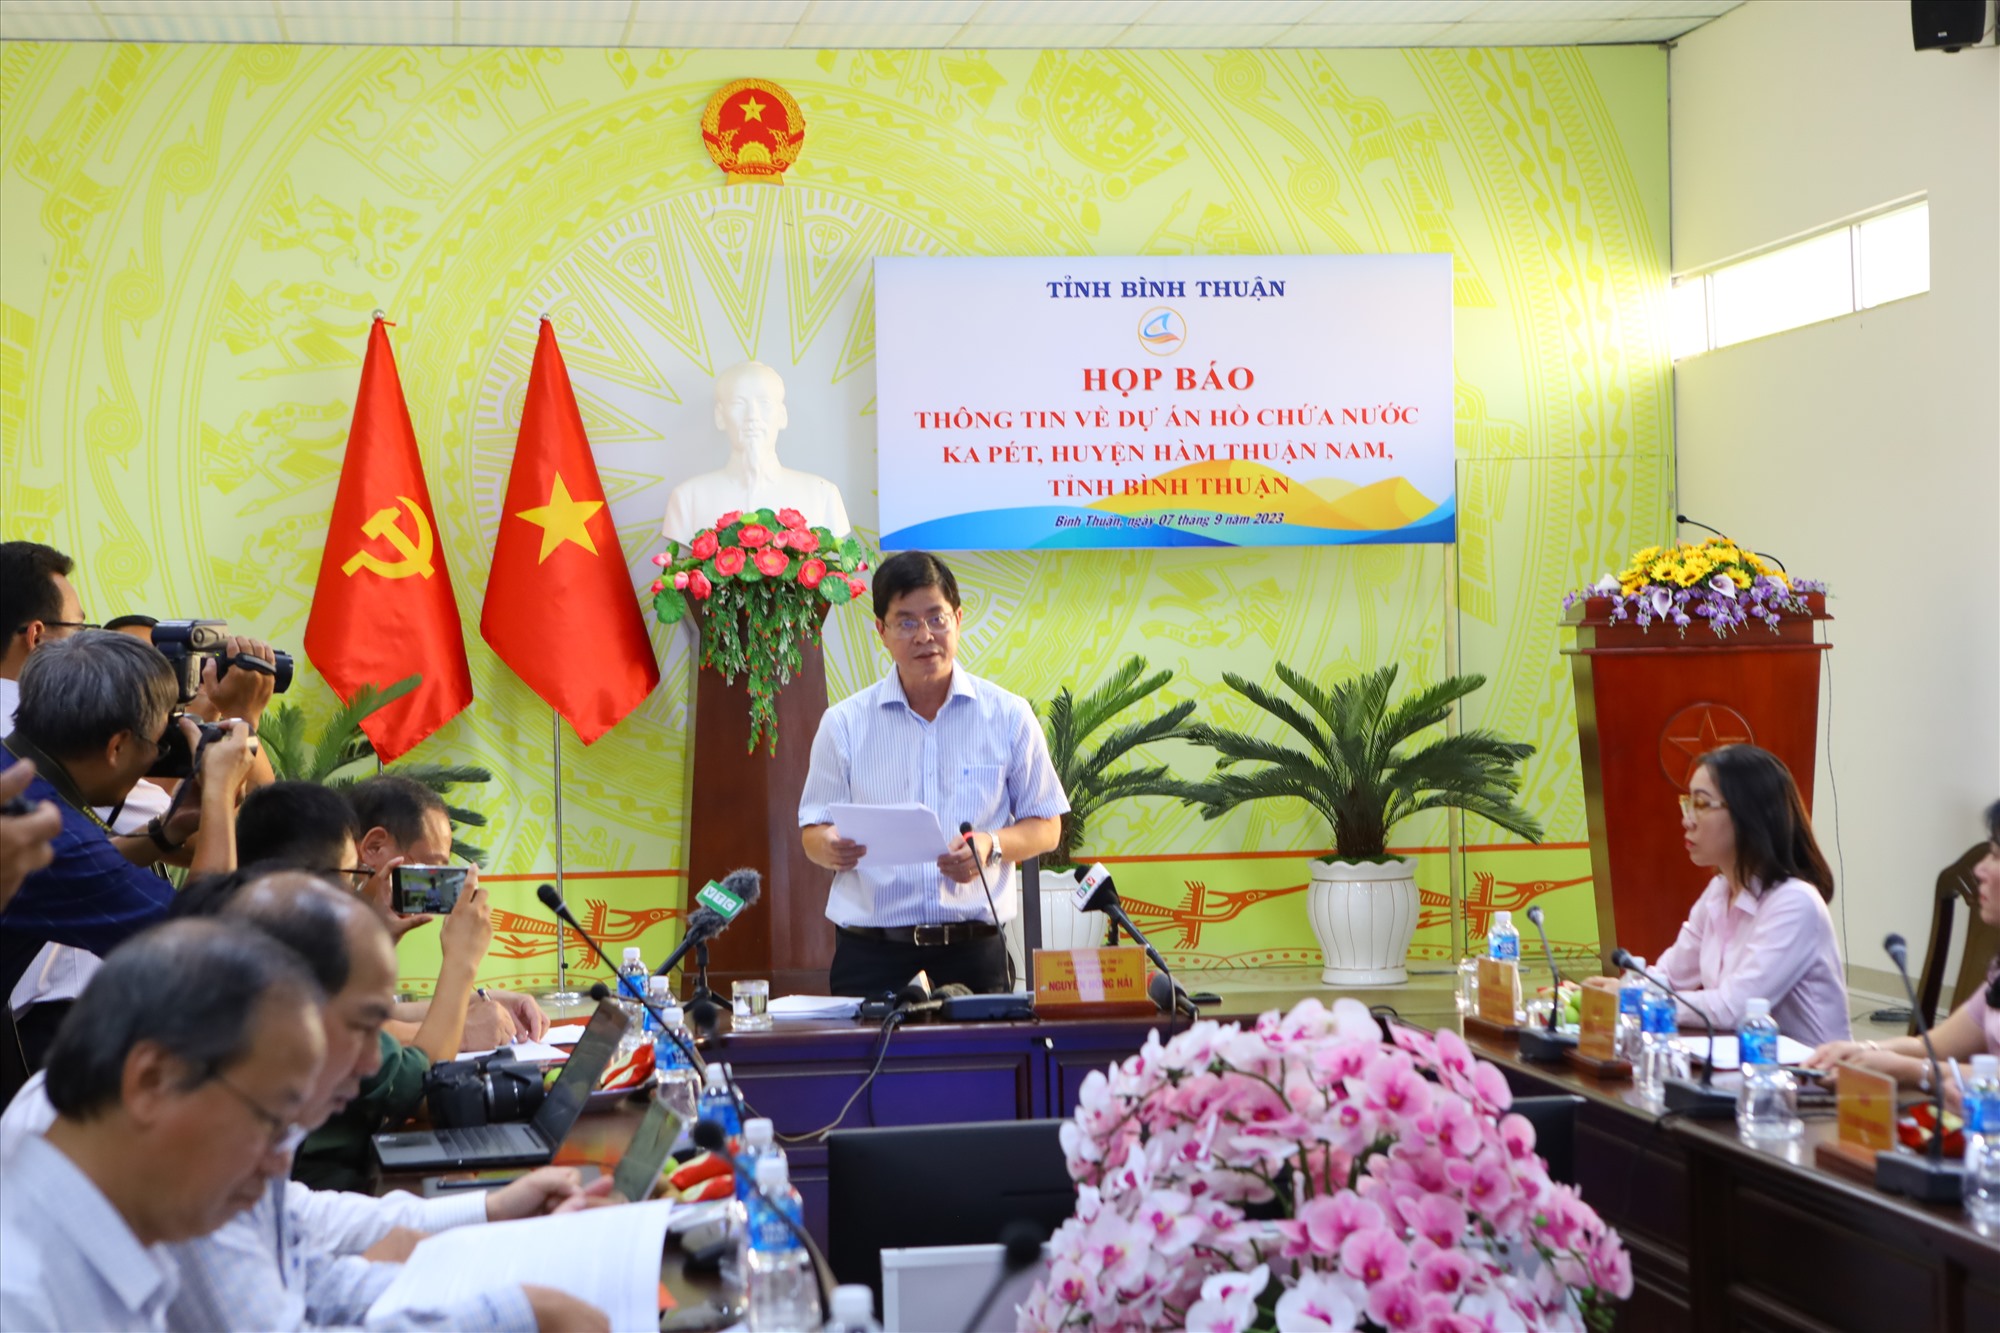 Phó chủ tịch UBND tỉnh Bình Thuận Nguyễn Hồng Hải chủ trì buổi họp báo. Ảnh: Duy Tuấn